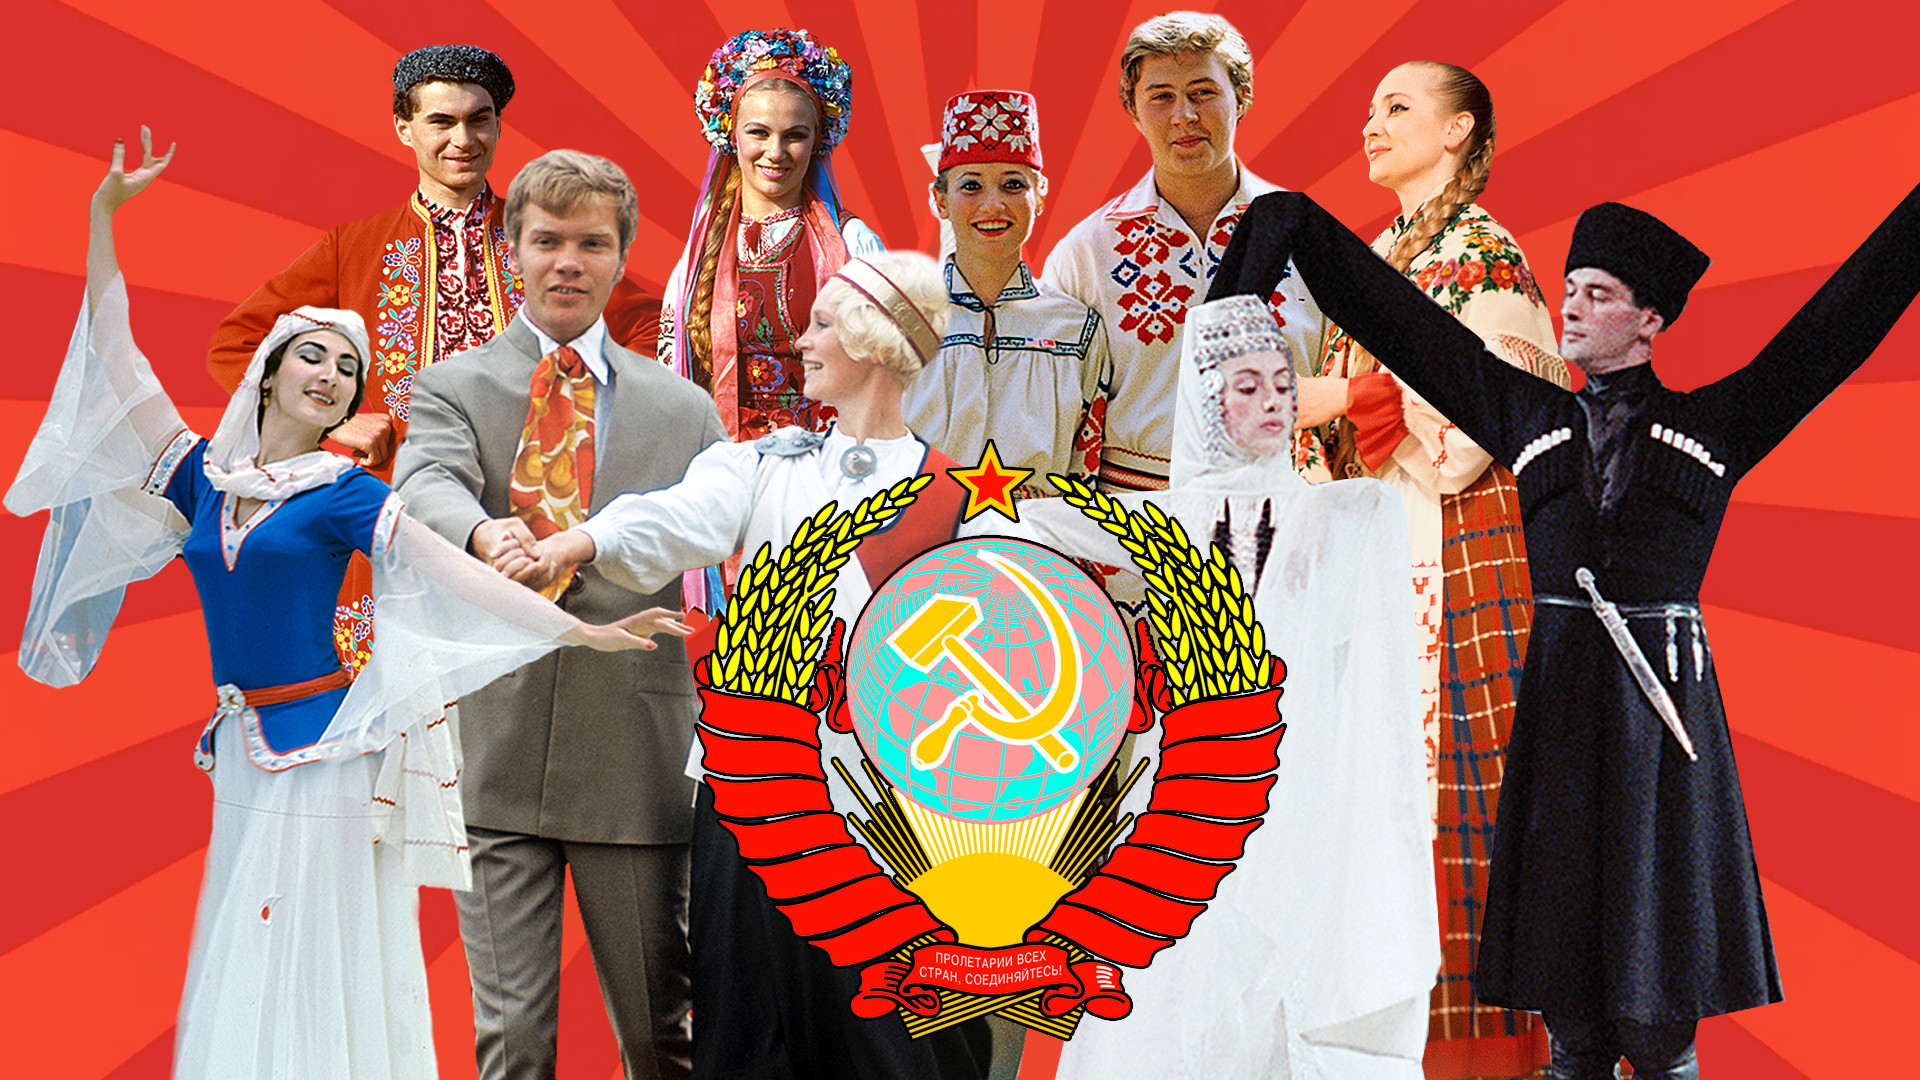 ソ連の民族衣装とはどのようなものだったのか ロシア ビヨンド